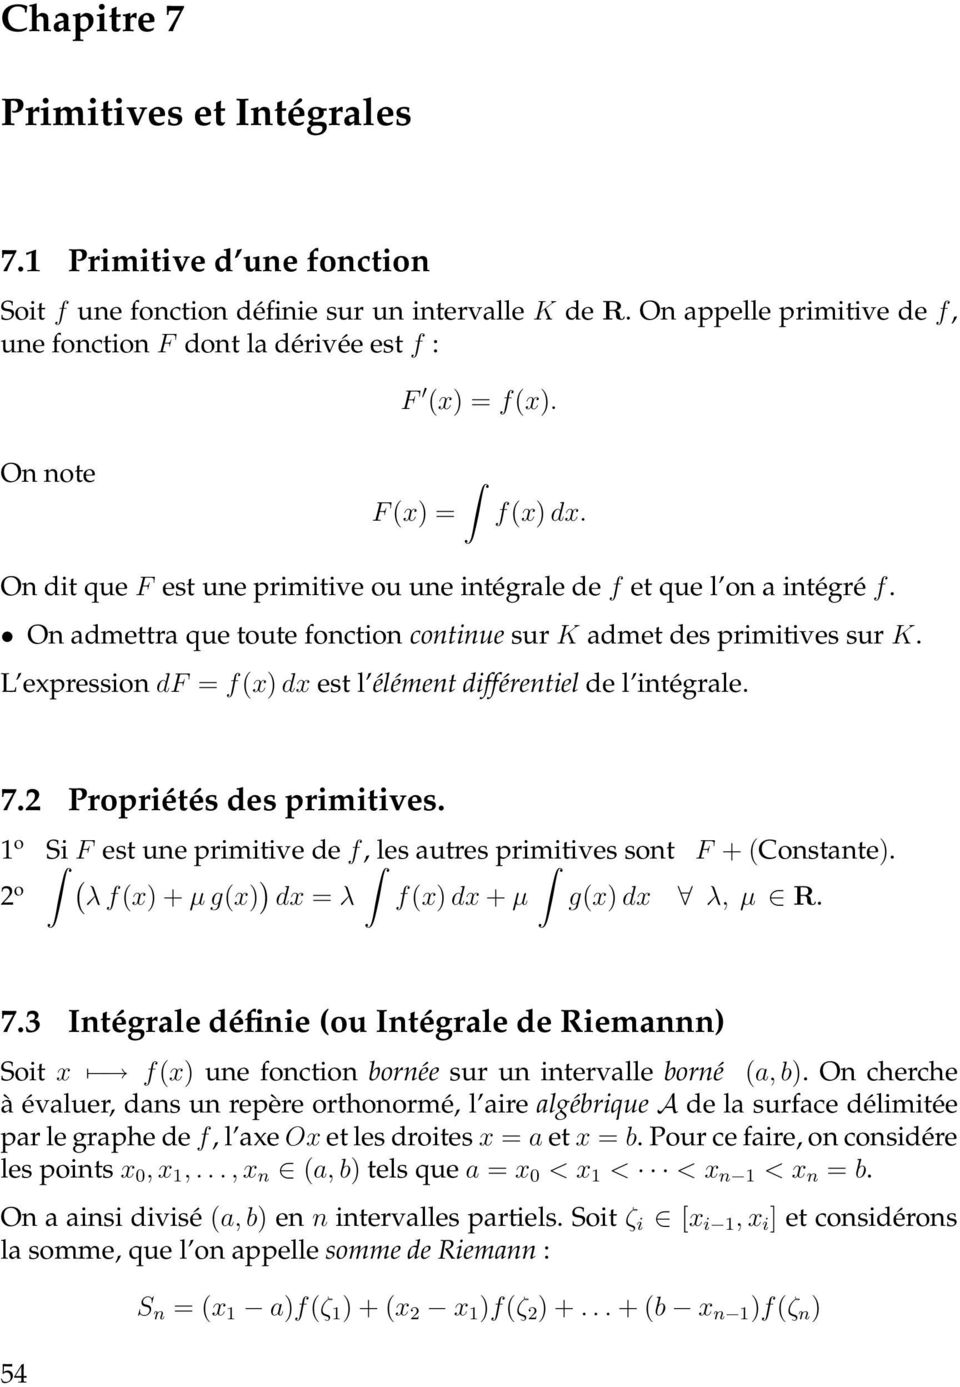 L expression df = f(x) est l élément différentiel de l intégrle. 7. Propriétés des primitives. o Si F est une primitive de f, les utres primitives sont F + (Constnte).